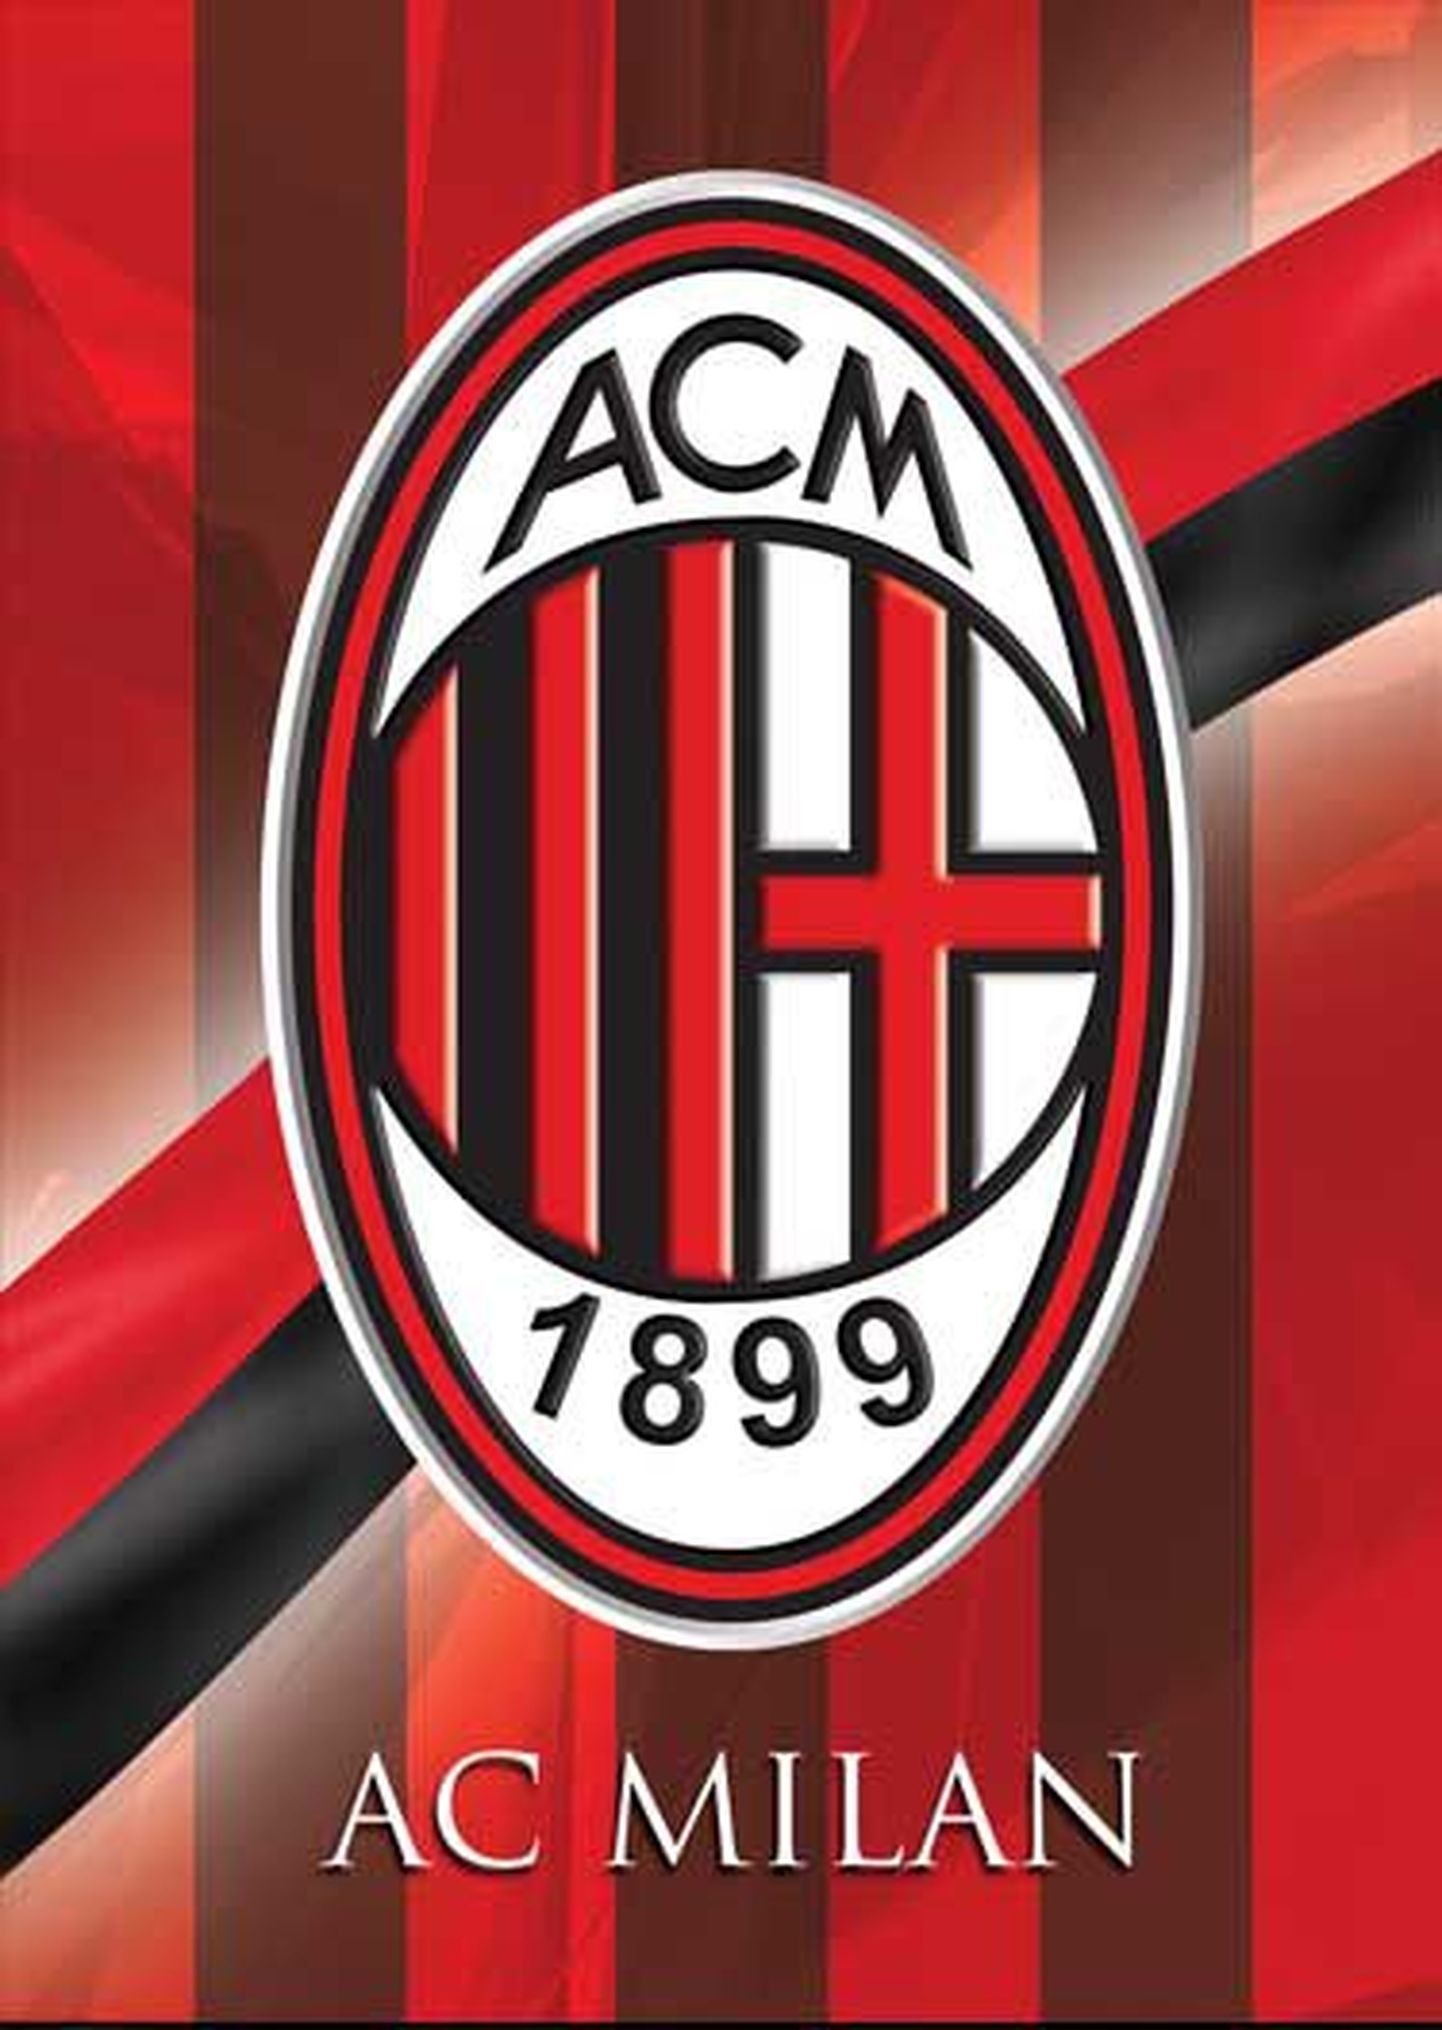 AC Milani logo.